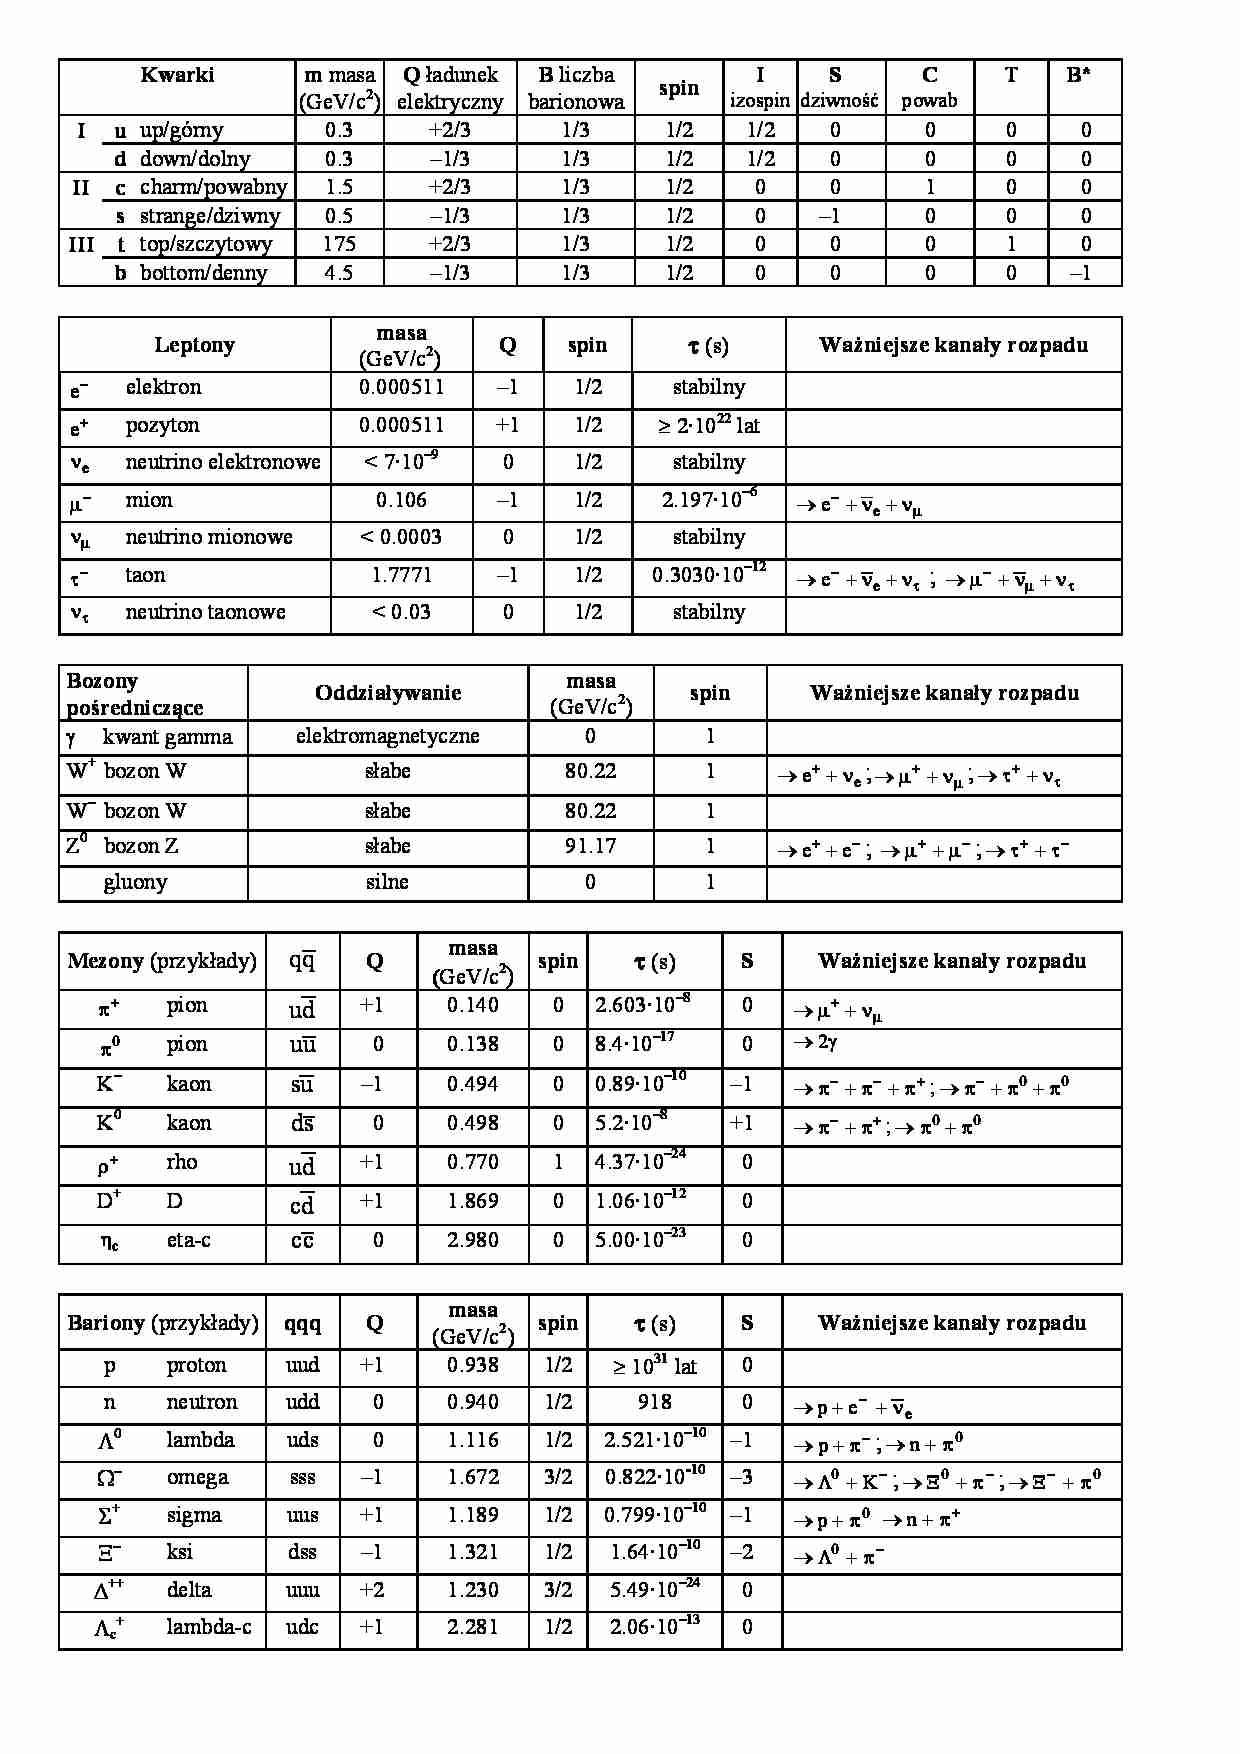 Kwarki, leptony - tabele - strona 1